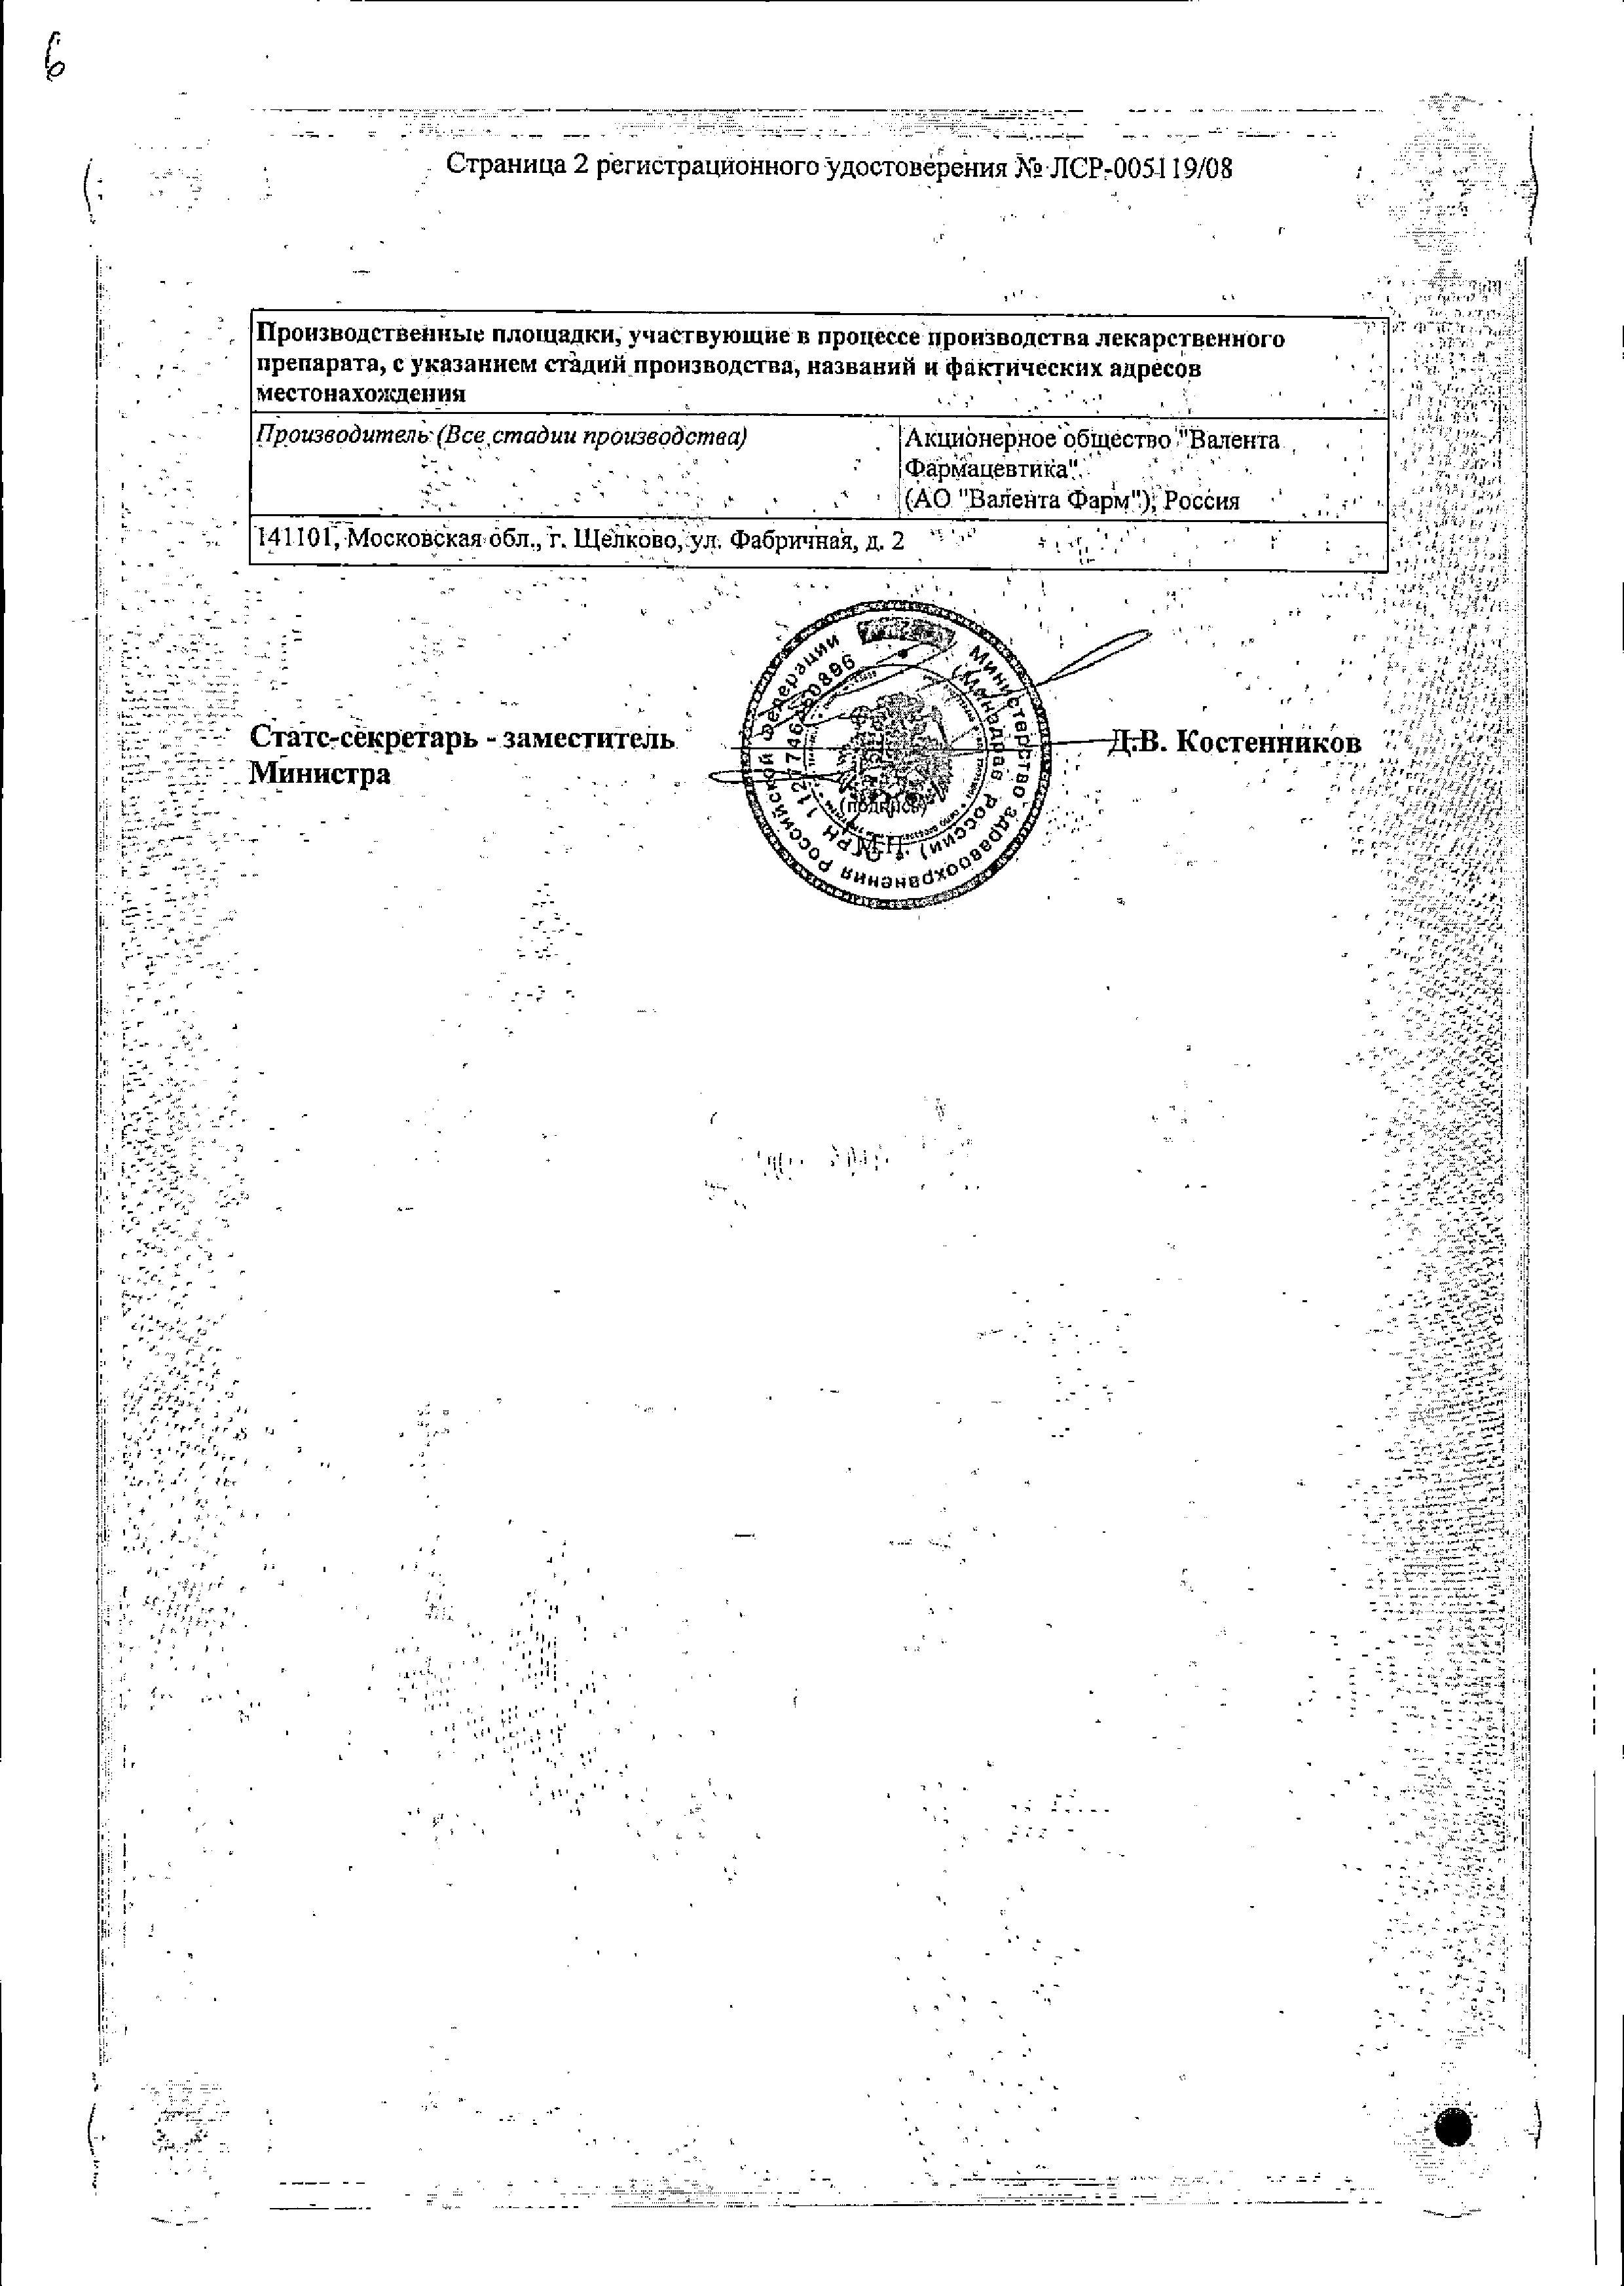 Граммидин с анестетиком нео сертификат